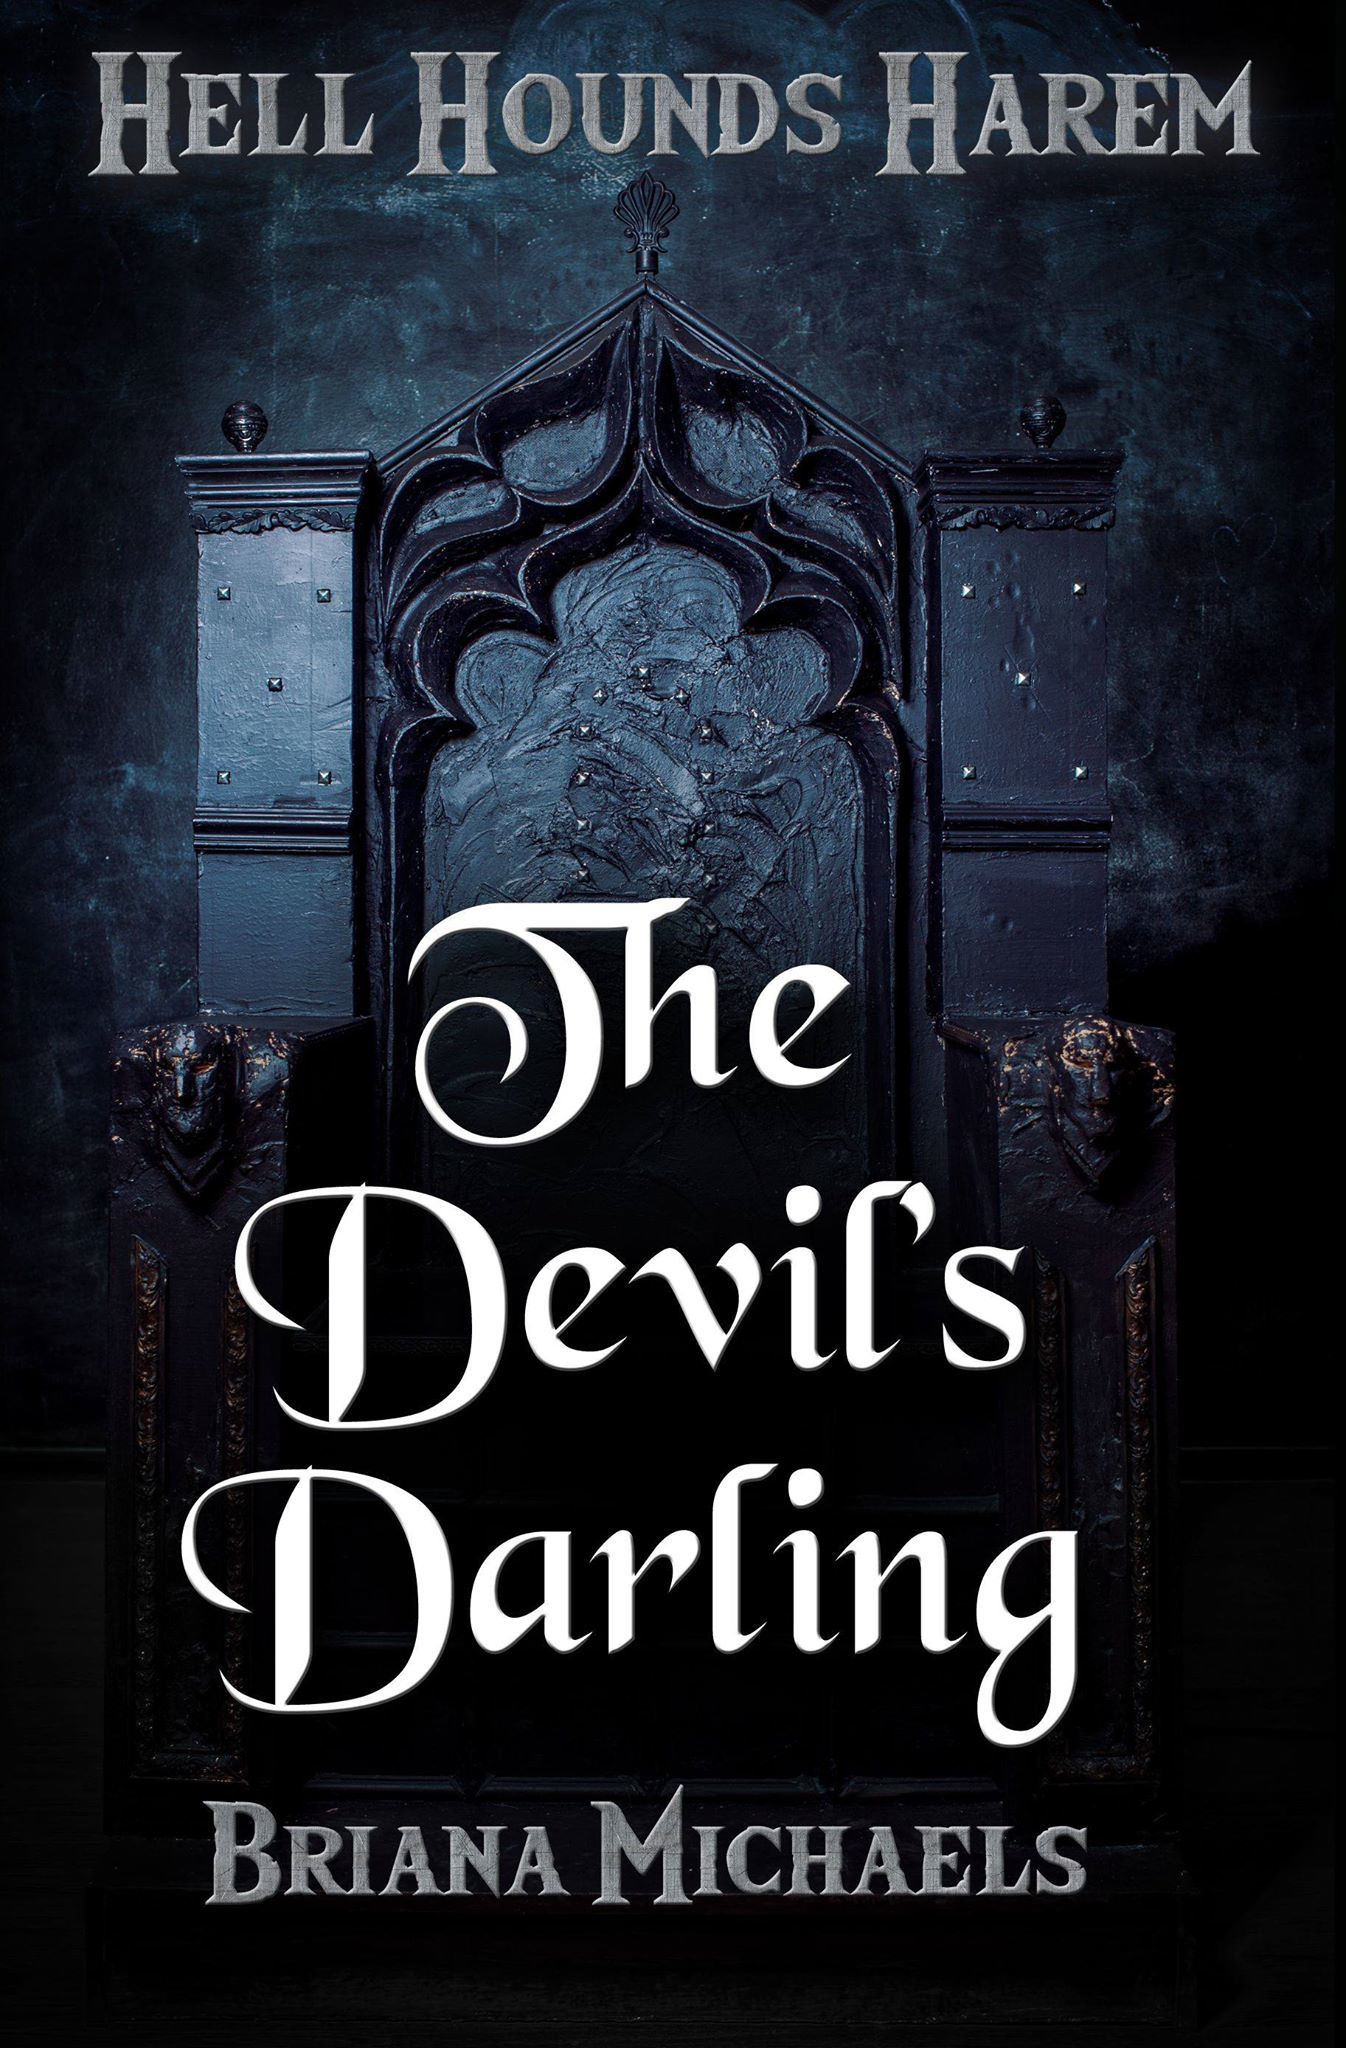 The Devil's Darling